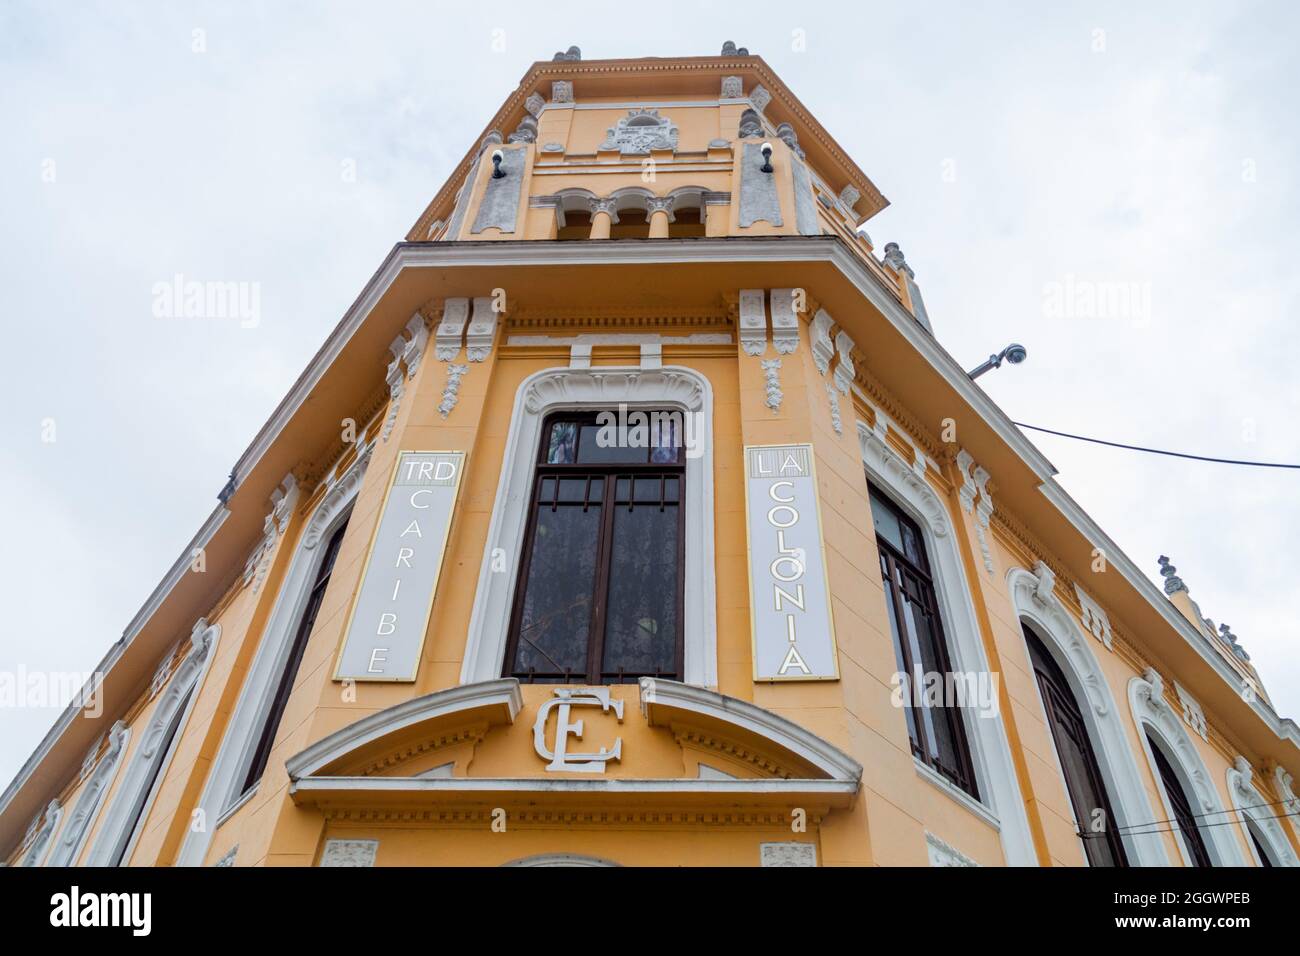 SANCTI SPIRITUS, CUBA - FEB 7, 2016: Colonia Espanola building in Sancti Spiritus, Cuba Stock Photo